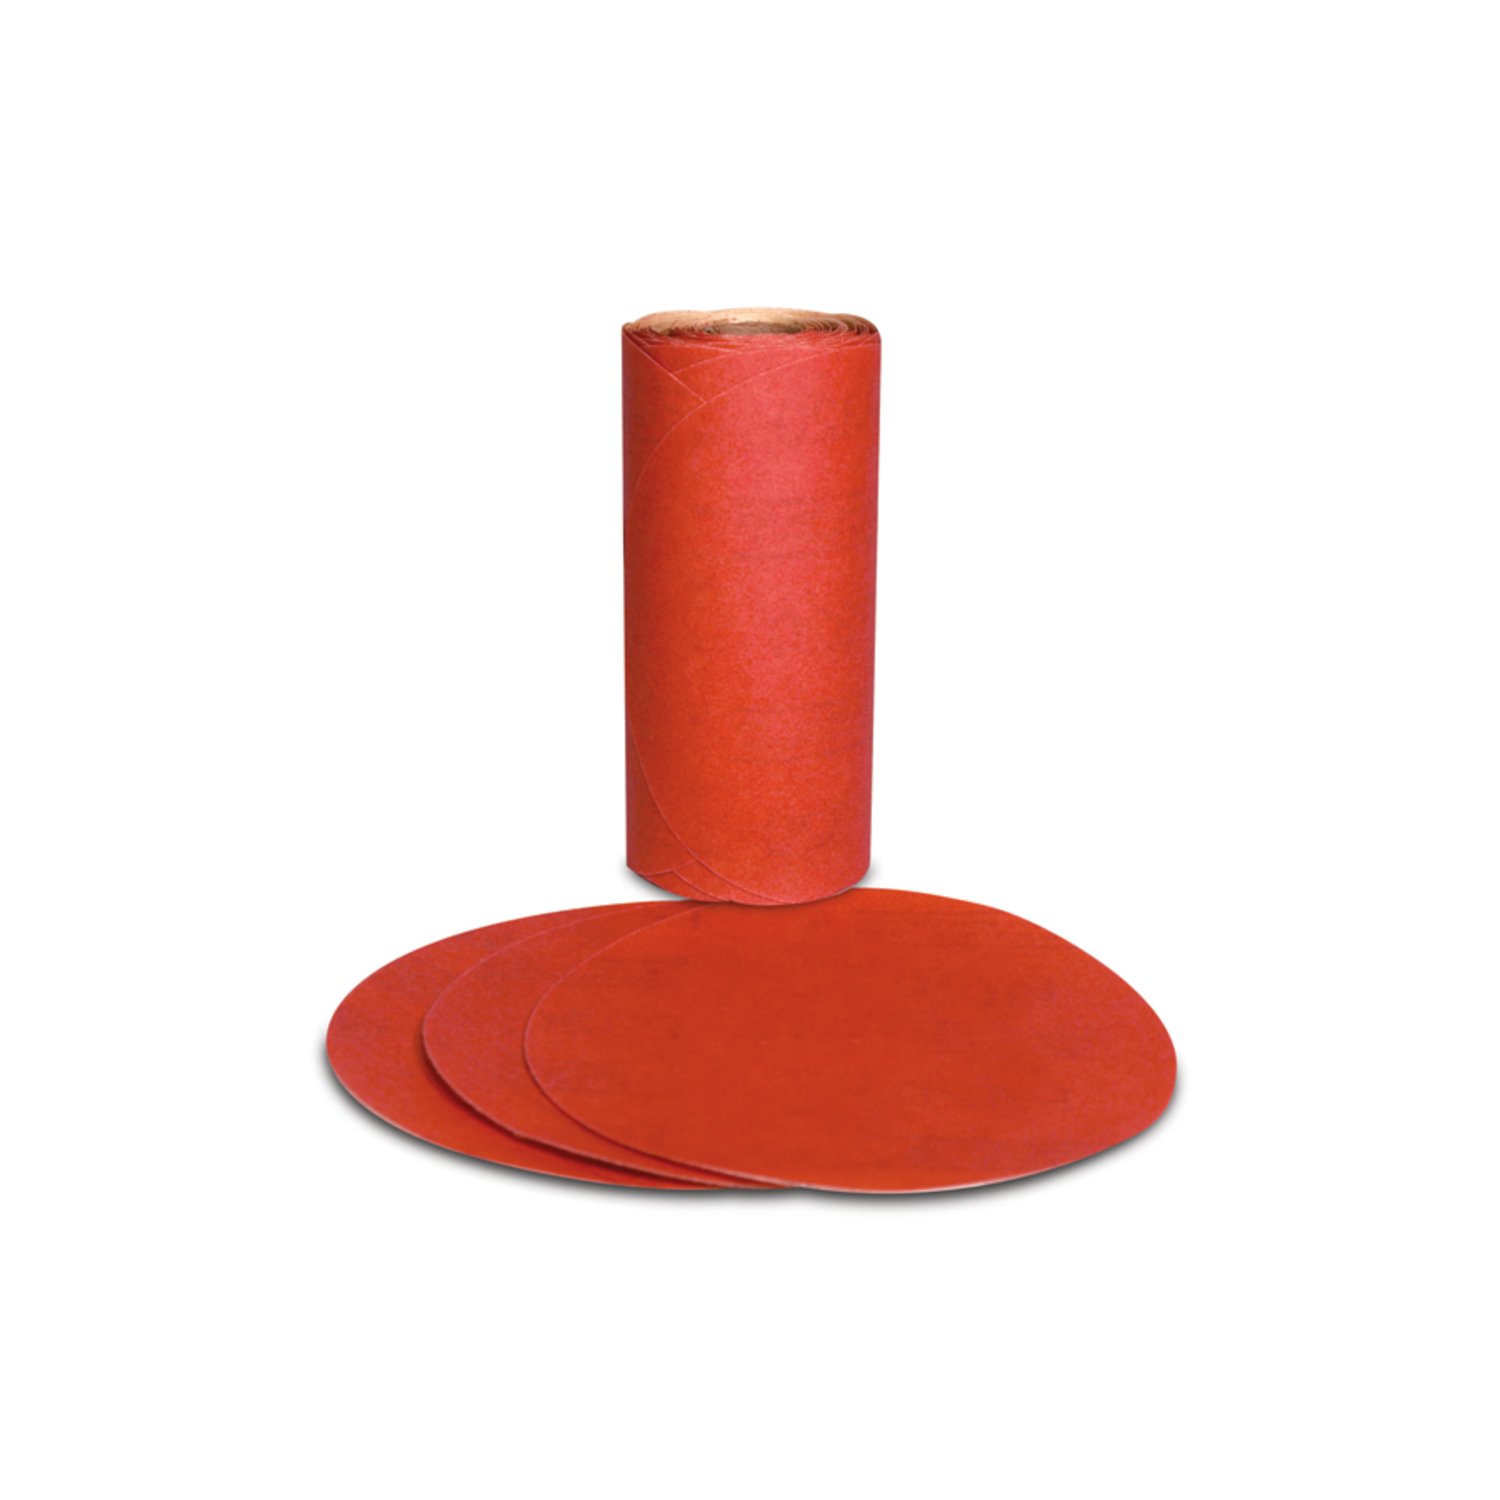 7000119918 - 3M Red Abrasive PSA Disc, 01610, 5 in, P80, 100 discs per roll, 6 rolls
per case